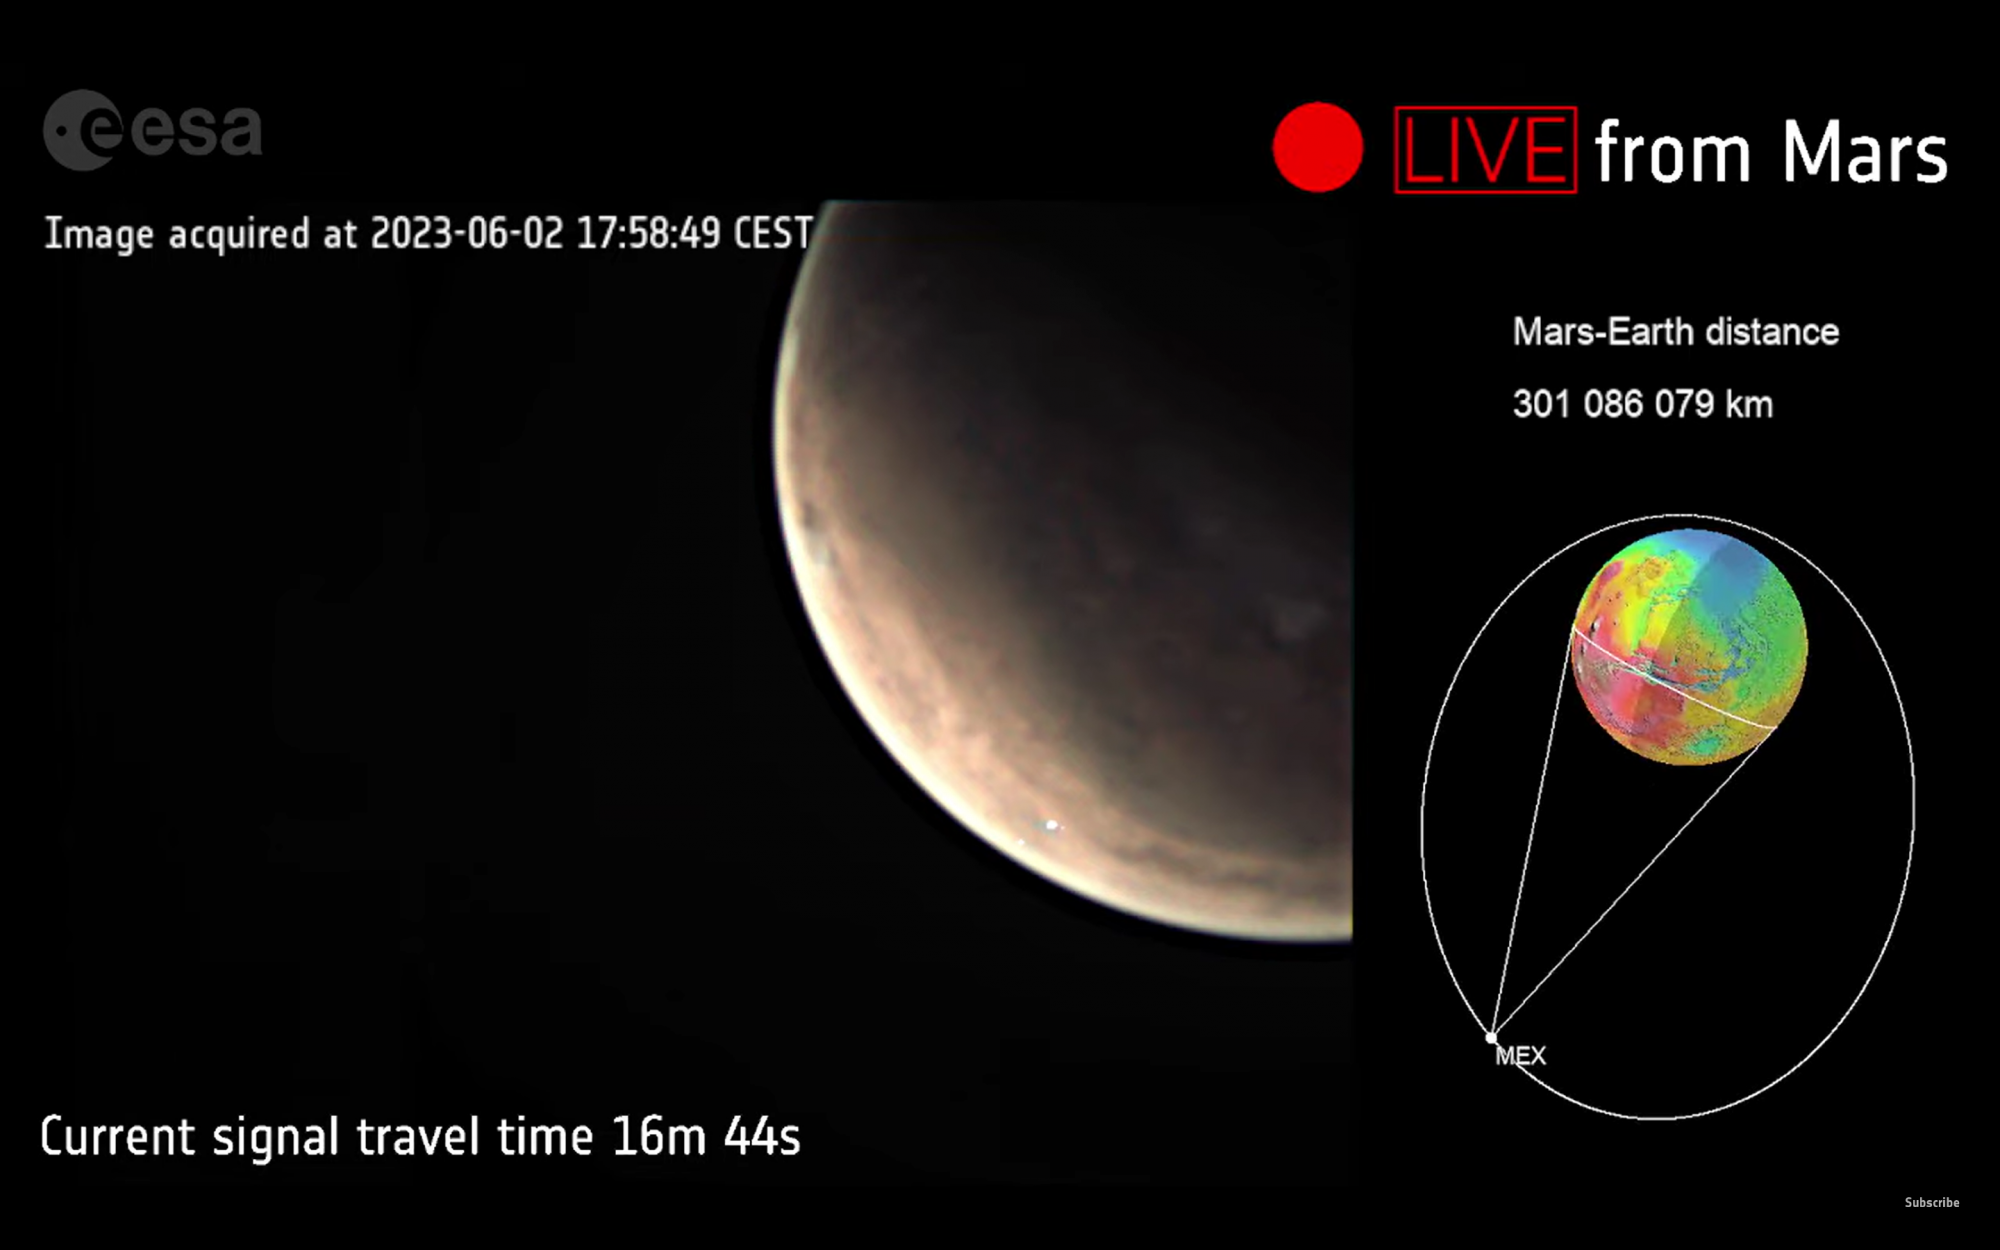 Egy 17:58-kor készült kép a Marsról, amin a Tharsis vulkáni régió részlete látható